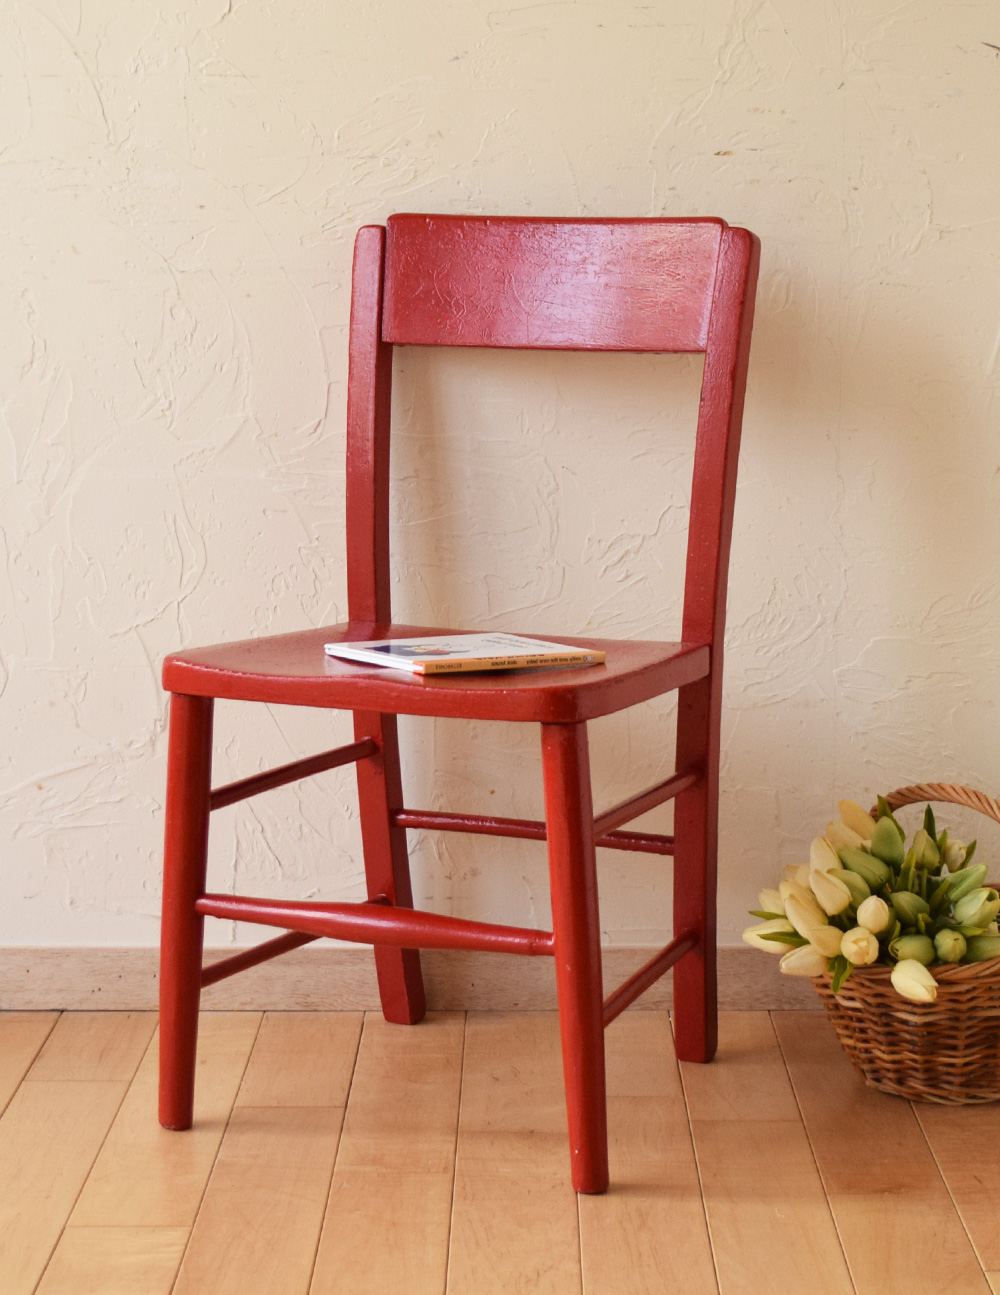 イギリスで見つけたアンティーク椅子、赤い色のチャイルドチェア (k-945-c)